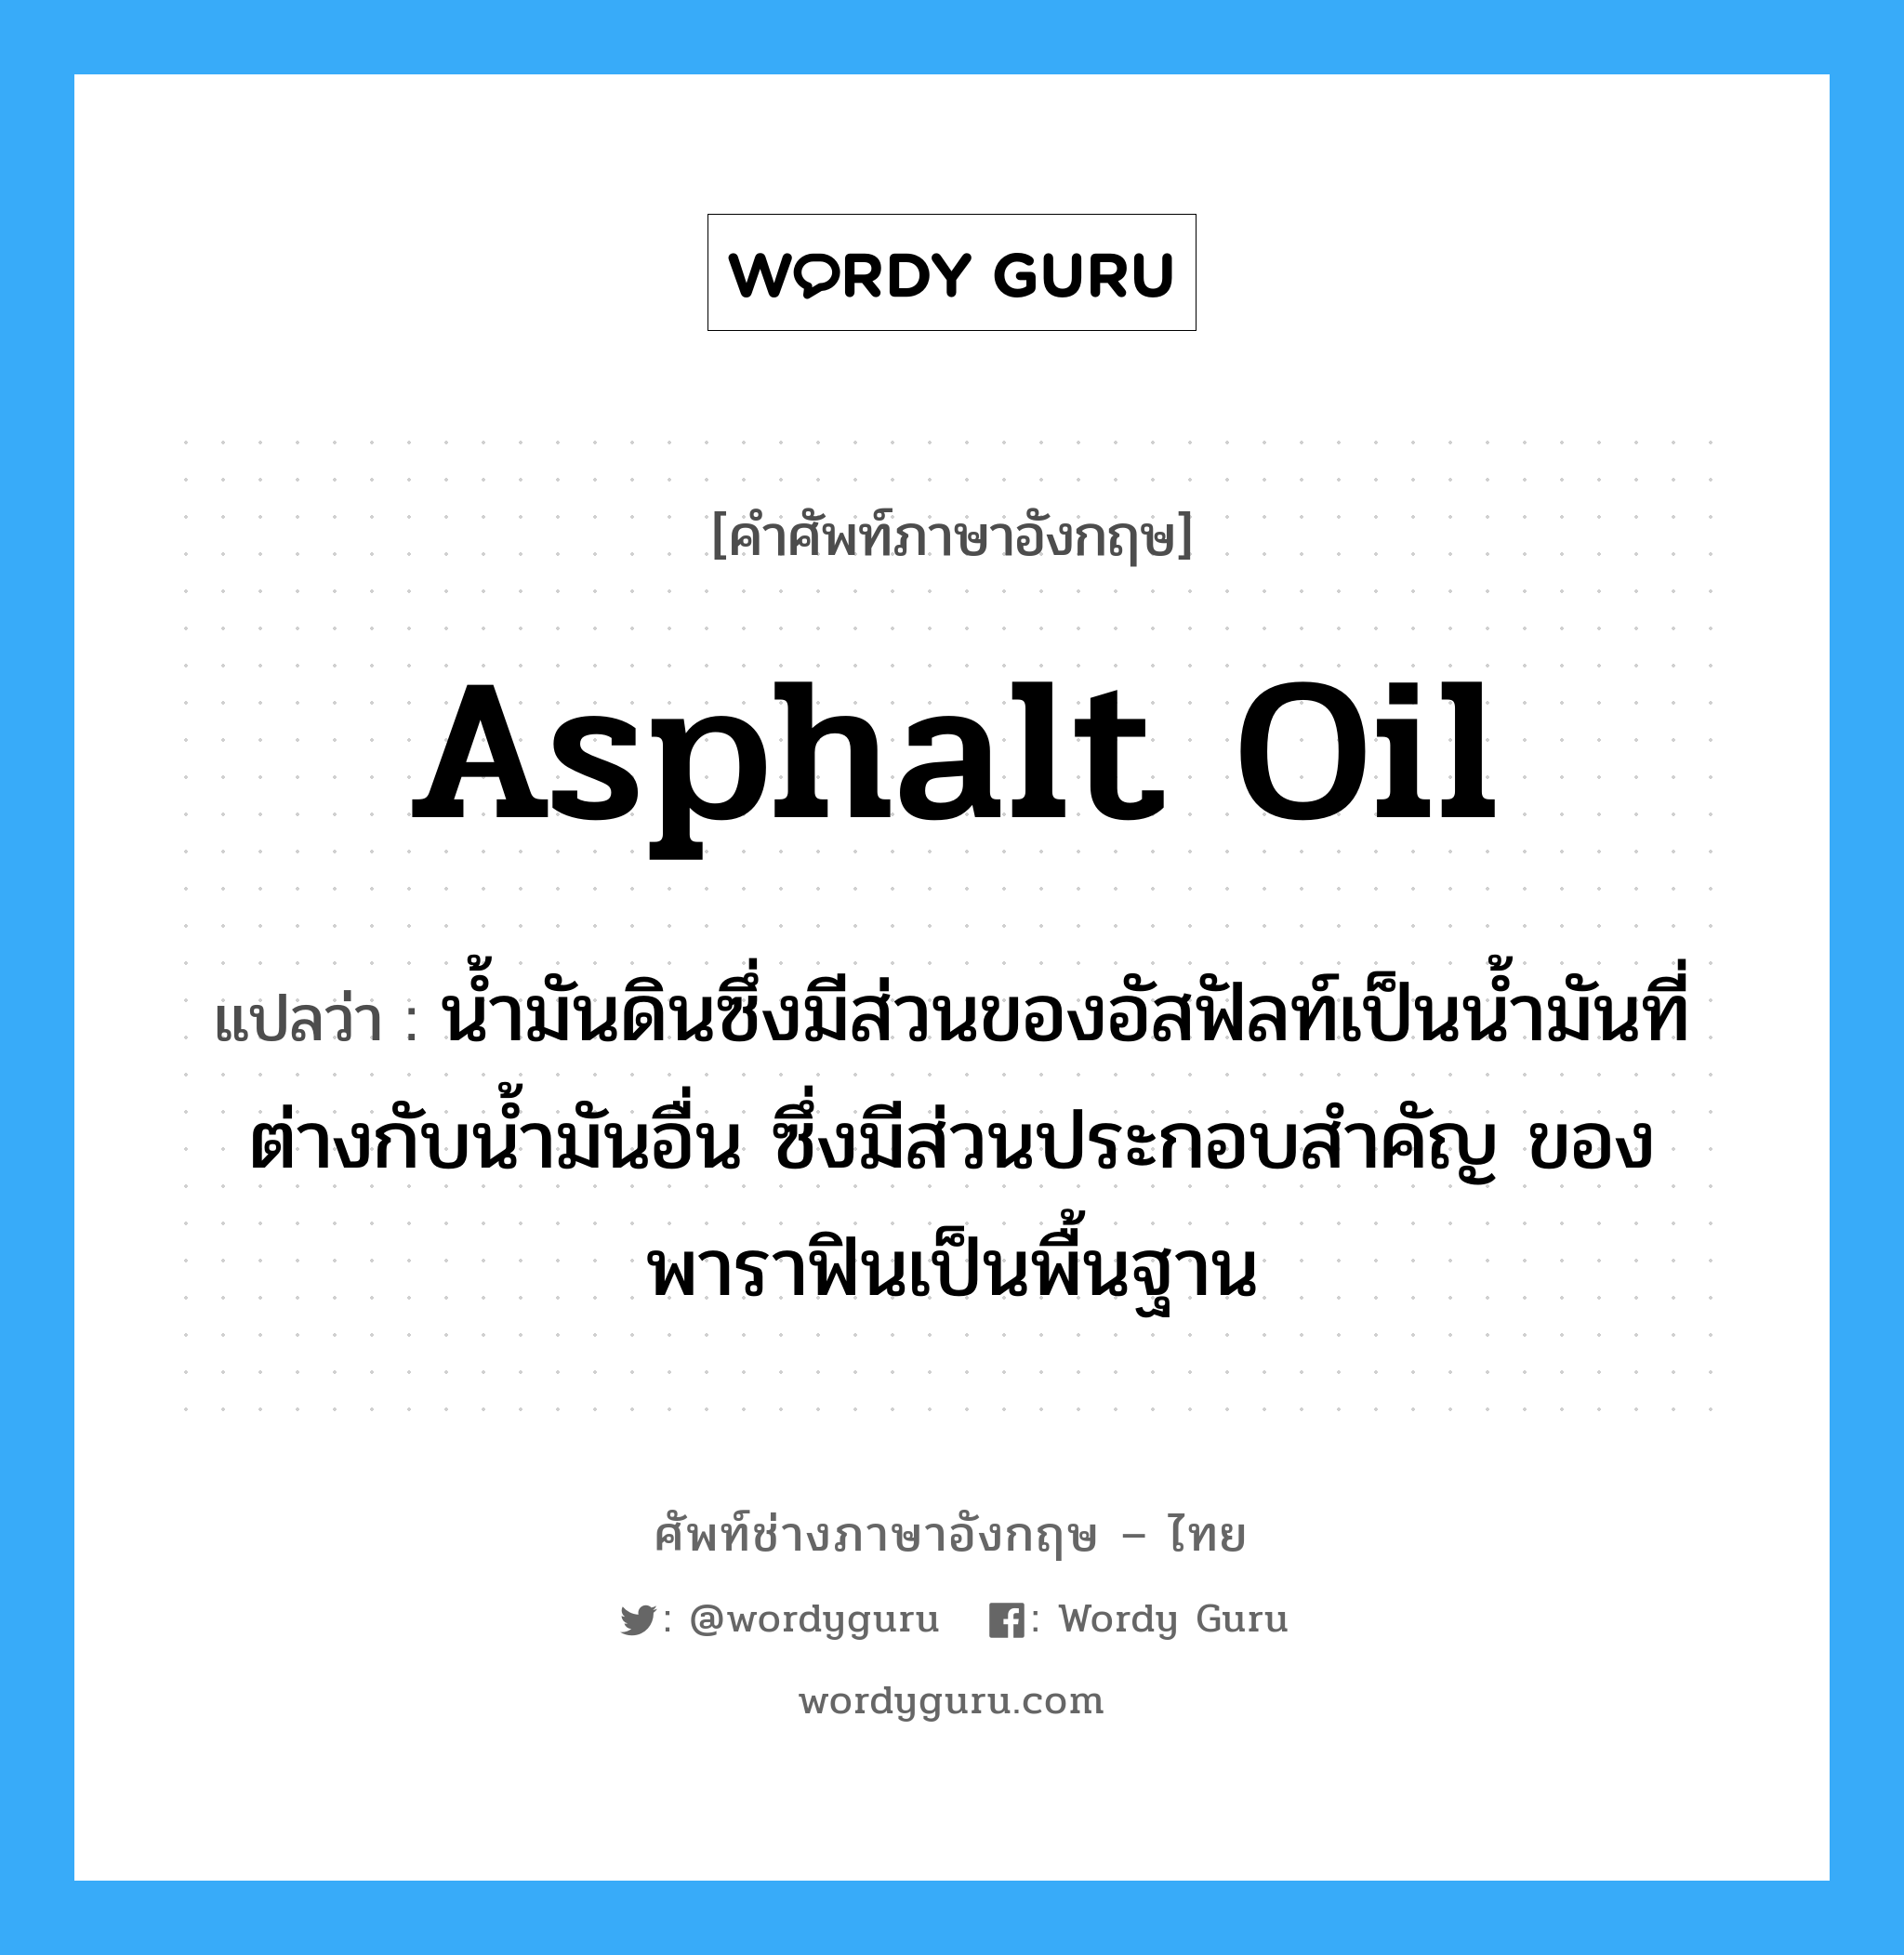 asphalt oil แปลว่า?, คำศัพท์ช่างภาษาอังกฤษ - ไทย asphalt oil คำศัพท์ภาษาอังกฤษ asphalt oil แปลว่า น้ำมันดินซึ่งมีส่วนของอัสฟัลท์เป็นน้ำมันที่ต่างกับน้ำมันอื่น ซึ่งมีส่วนประกอบสำคัญ ของพาราฟินเป็นพื้นฐาน